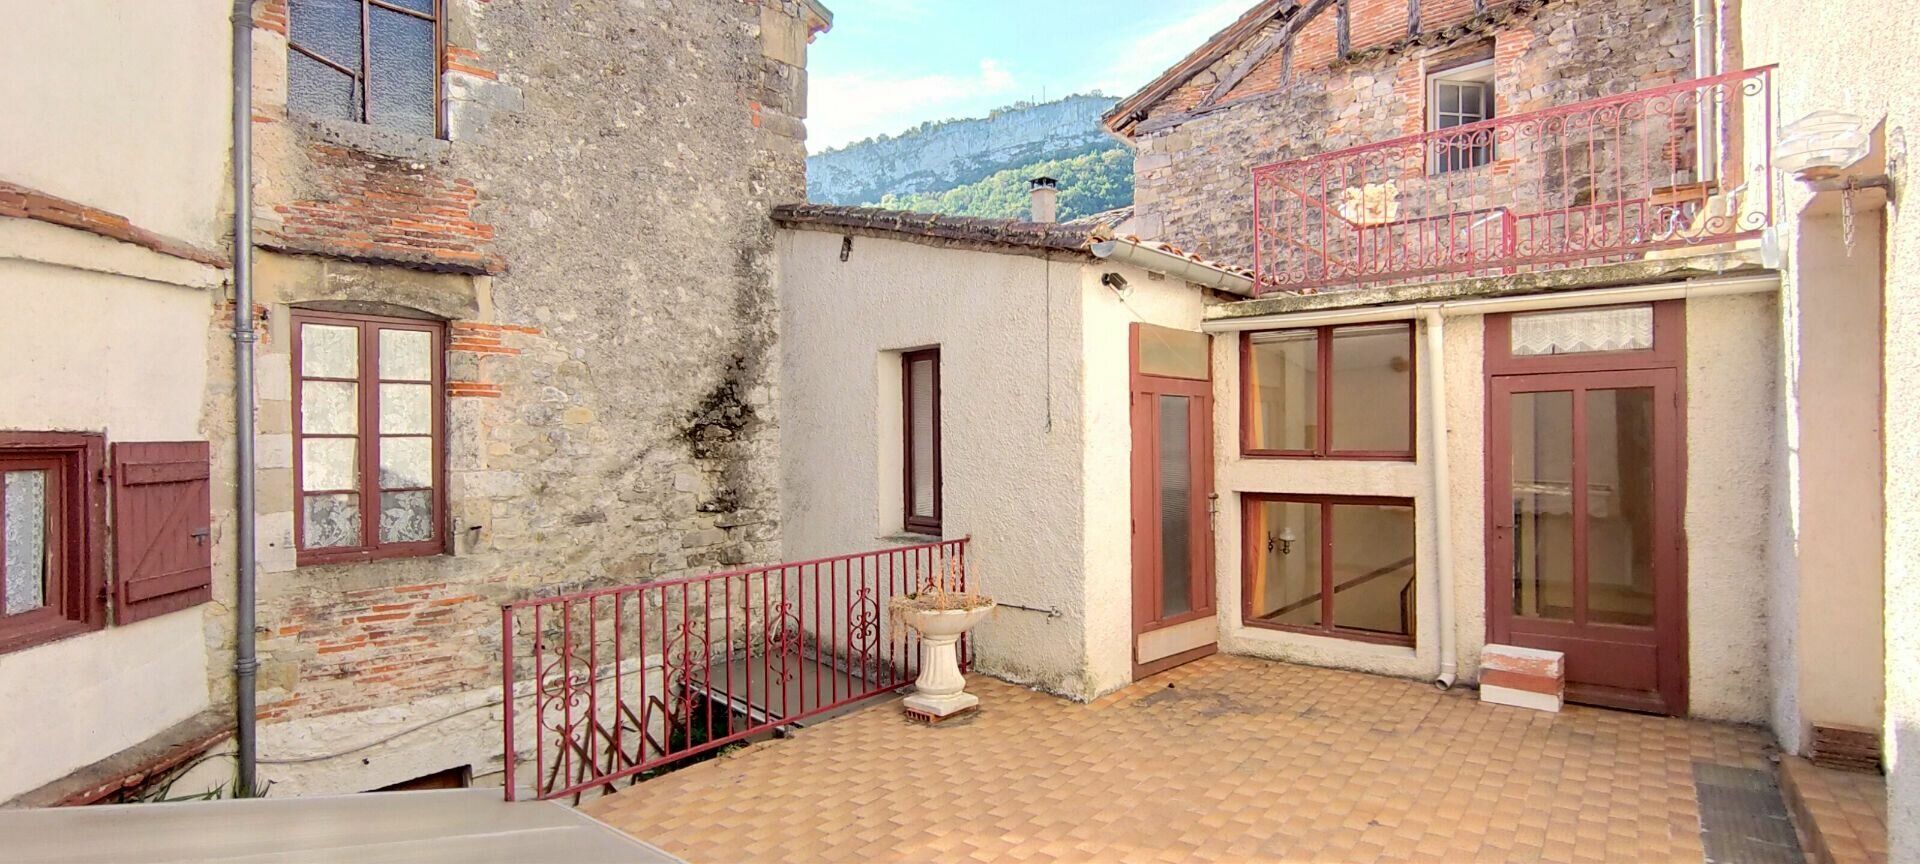 Maison à vendre 9 450m2 à Saint-Antonin-Noble-Val vignette-6